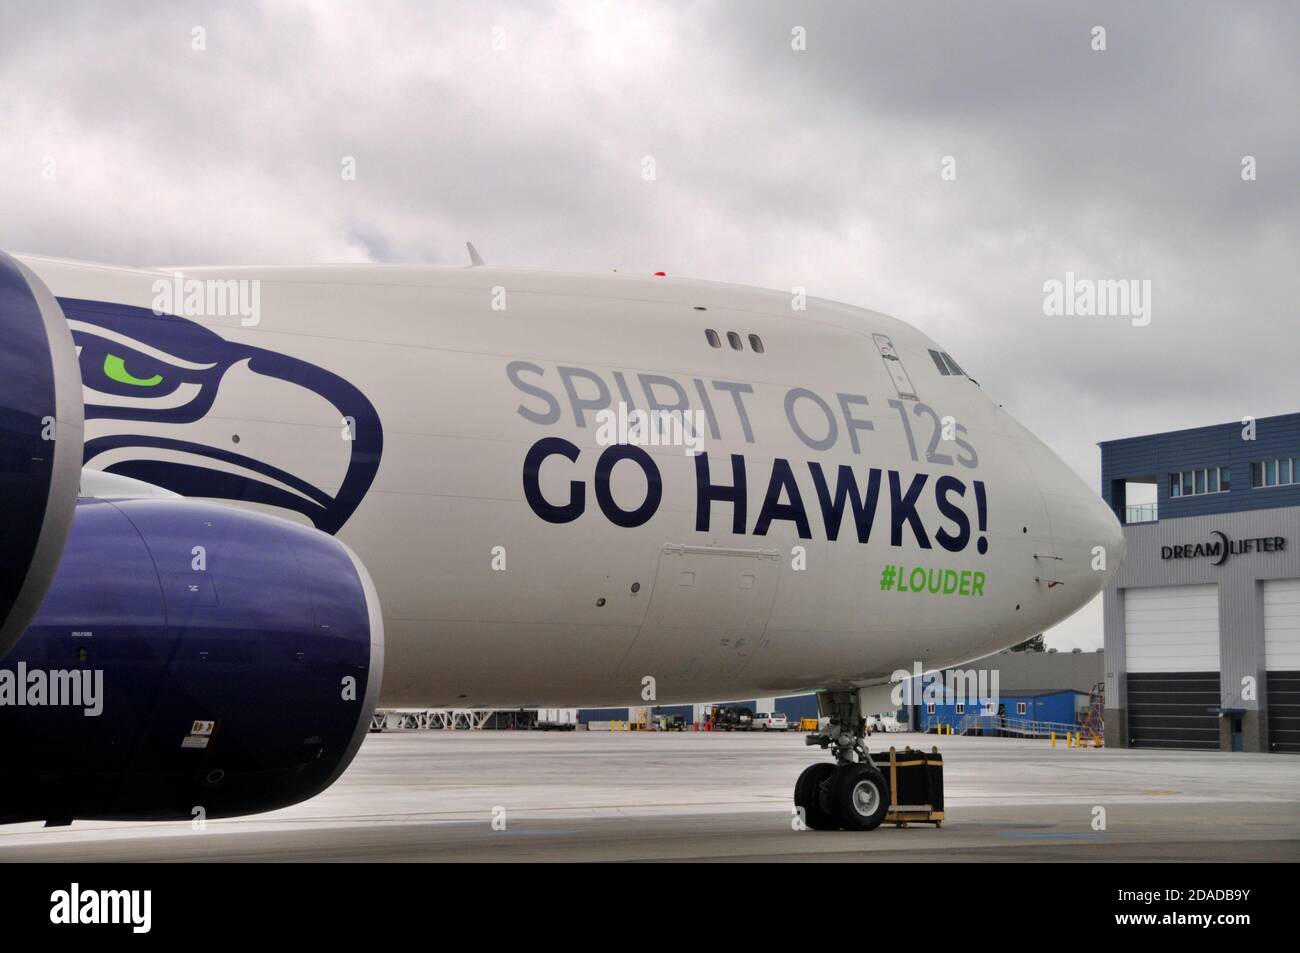 L'équipe de football de Seahawks se trouve sur le parking Boeing 747-8 Freighter devant le bâtiment du centre des opérations de Dreamlipper à l'aéroport de Plainfield à Everett, en Australie occidentale Banque D'Images